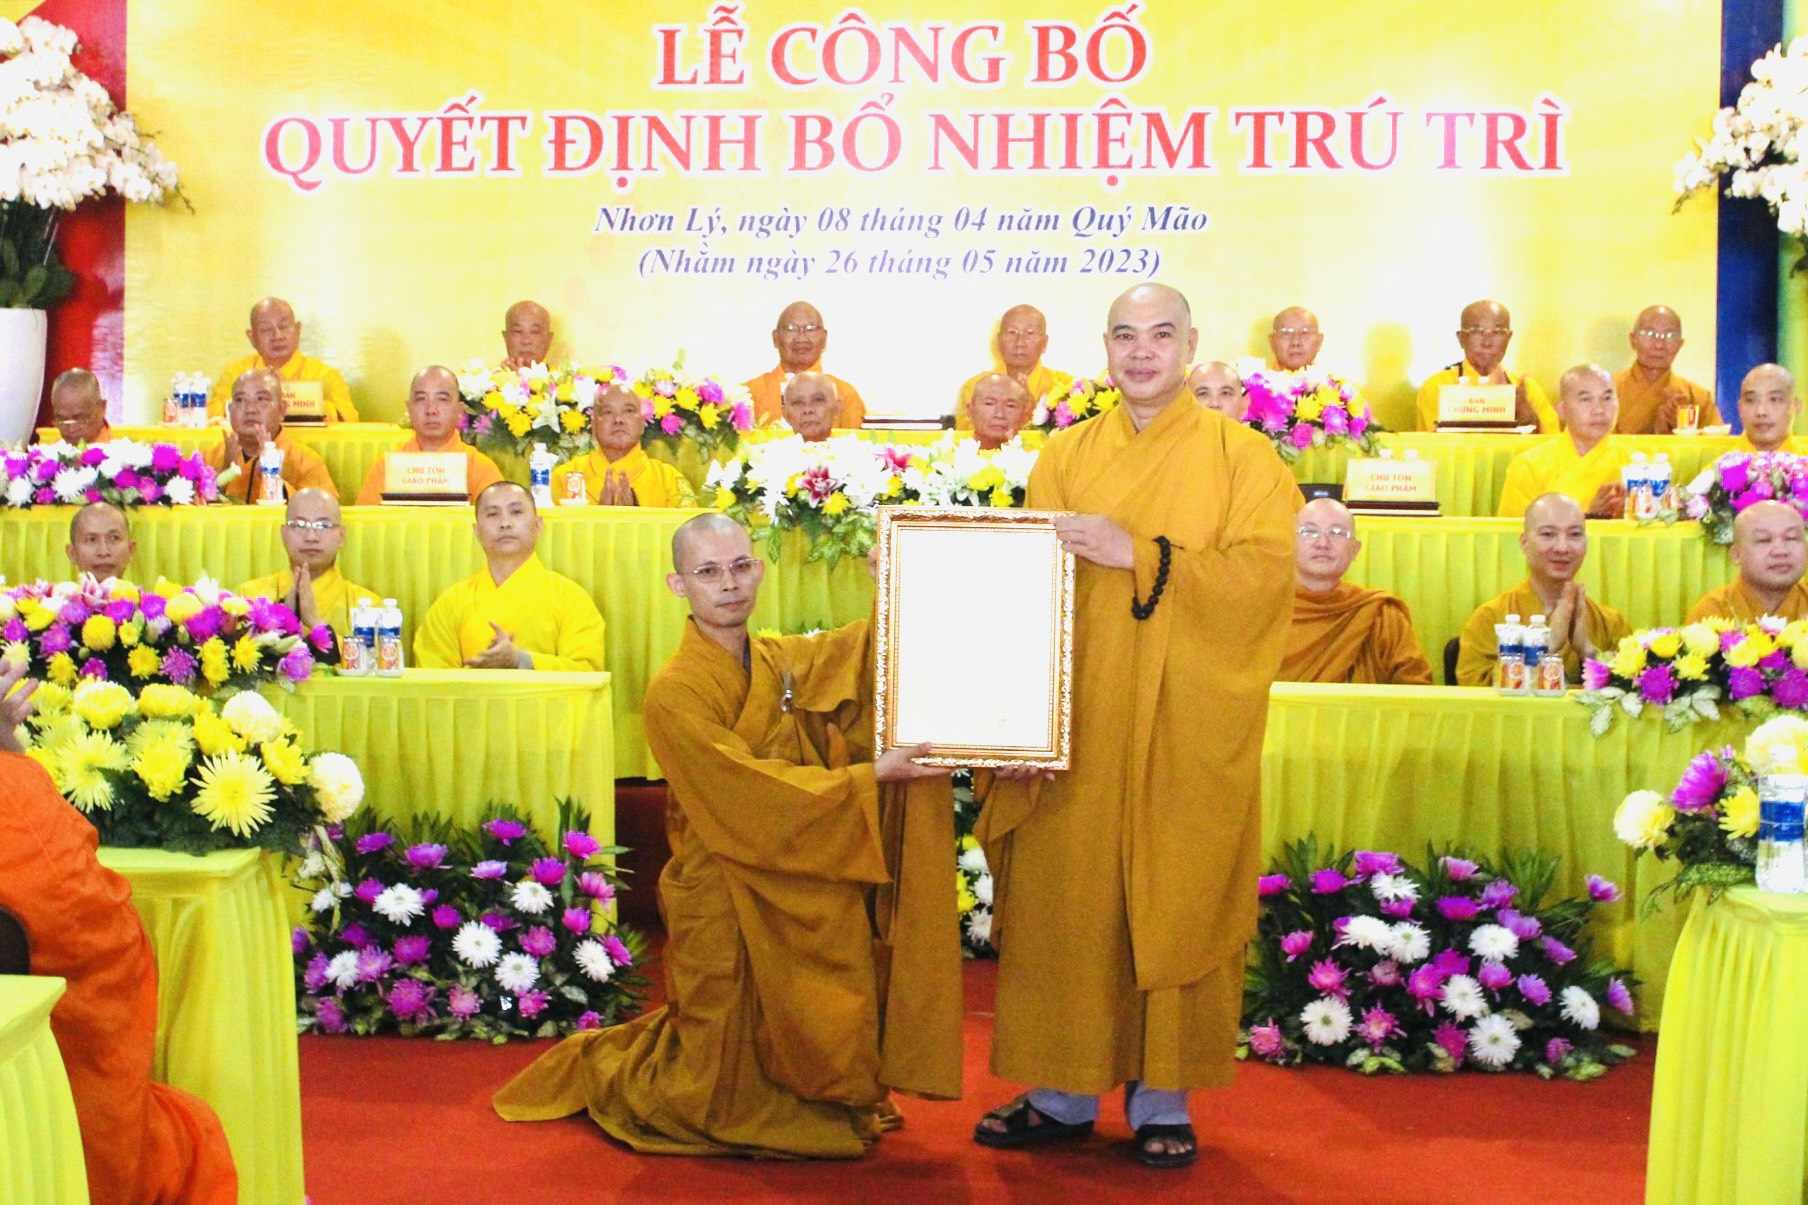 Quy Nhơn: Lễ công bố Quyết định bổ nhiệm trụ trì chùa Phước Hưng